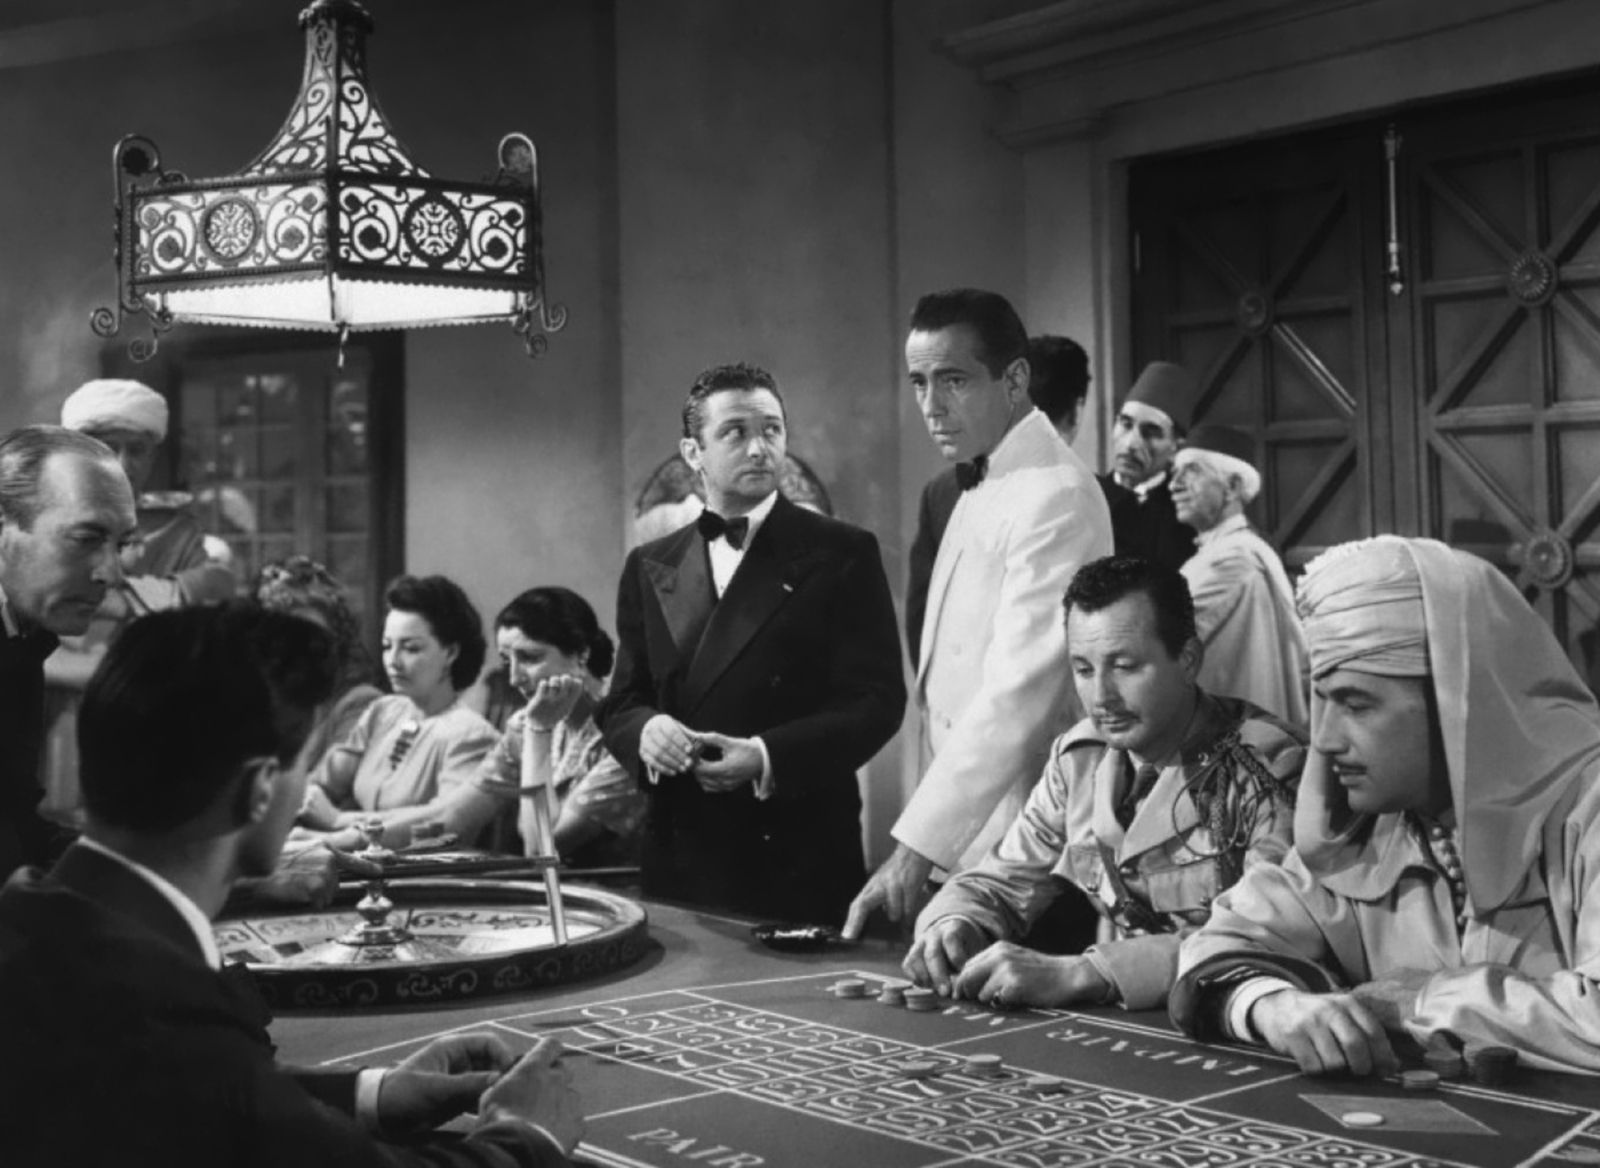 Bogart Casino